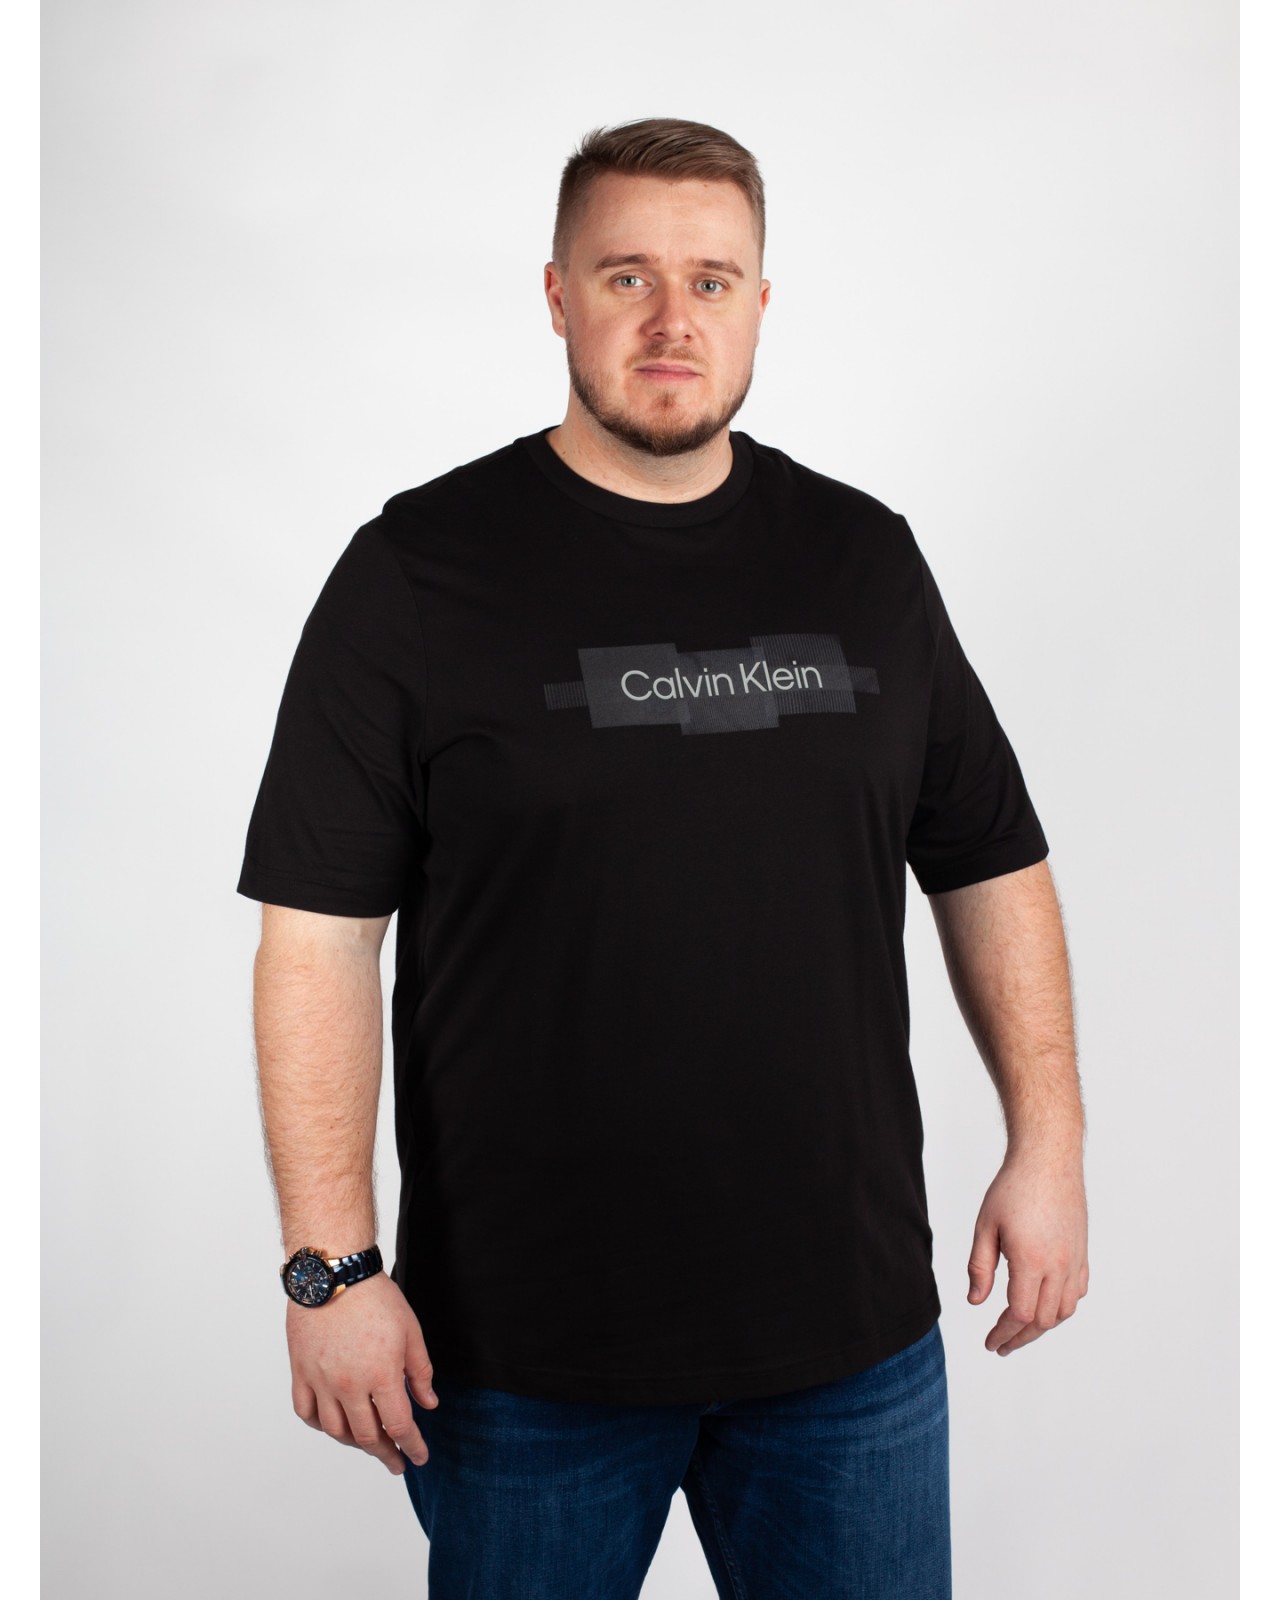 T-Shirt Grande Taille Homme 3XL Calvin Klein